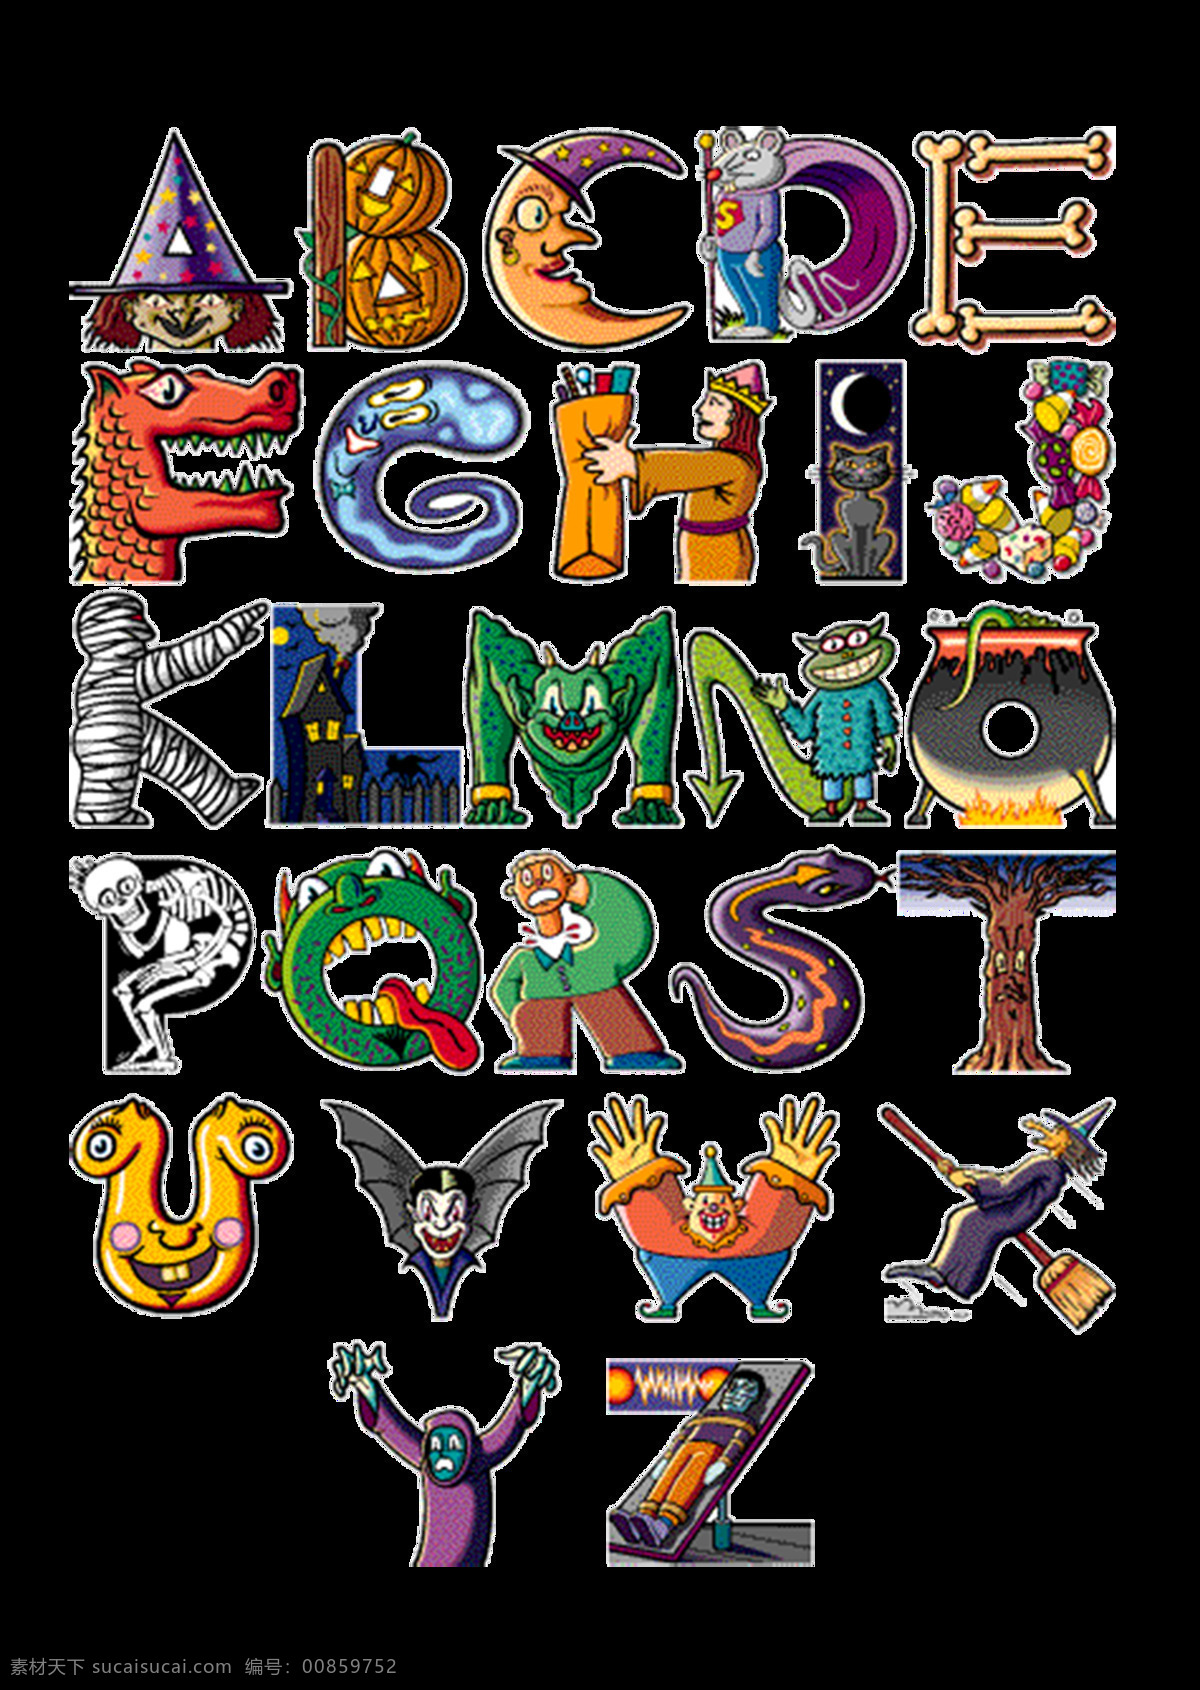 魔幻 系列 艺术 字母 26个字母 英文字母 卡通字母 魔幻风格字母 字母元素 艺术字母 字母图案 另类字母